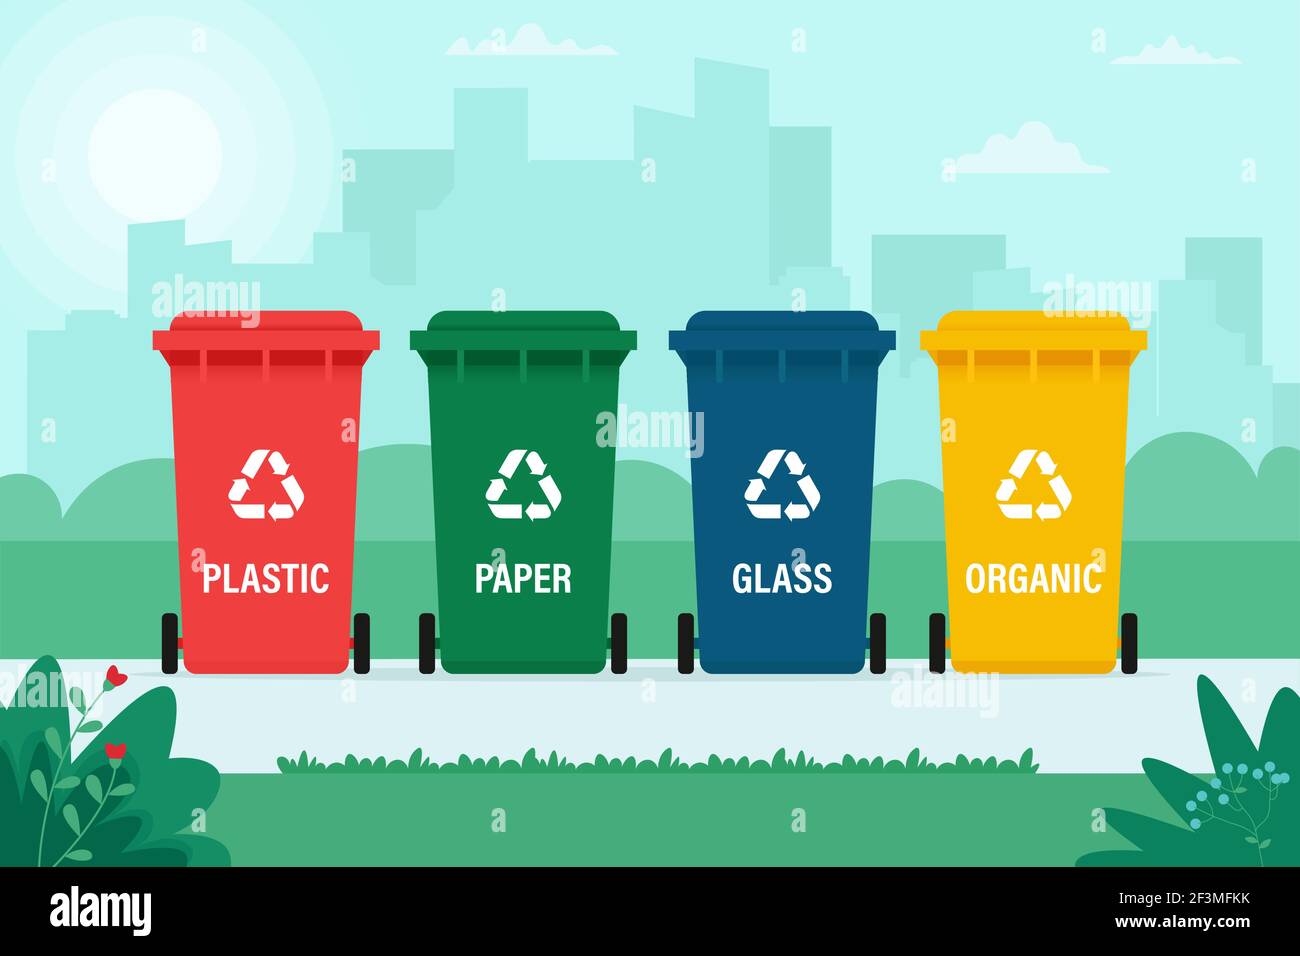 Bidoni per rifiuti organici, di carta, di plastica, di vetro. Riciclaggio, smistamento rifiuti, ecologia, concetto. Illustrazione vettoriale in stile piatto Illustrazione Vettoriale